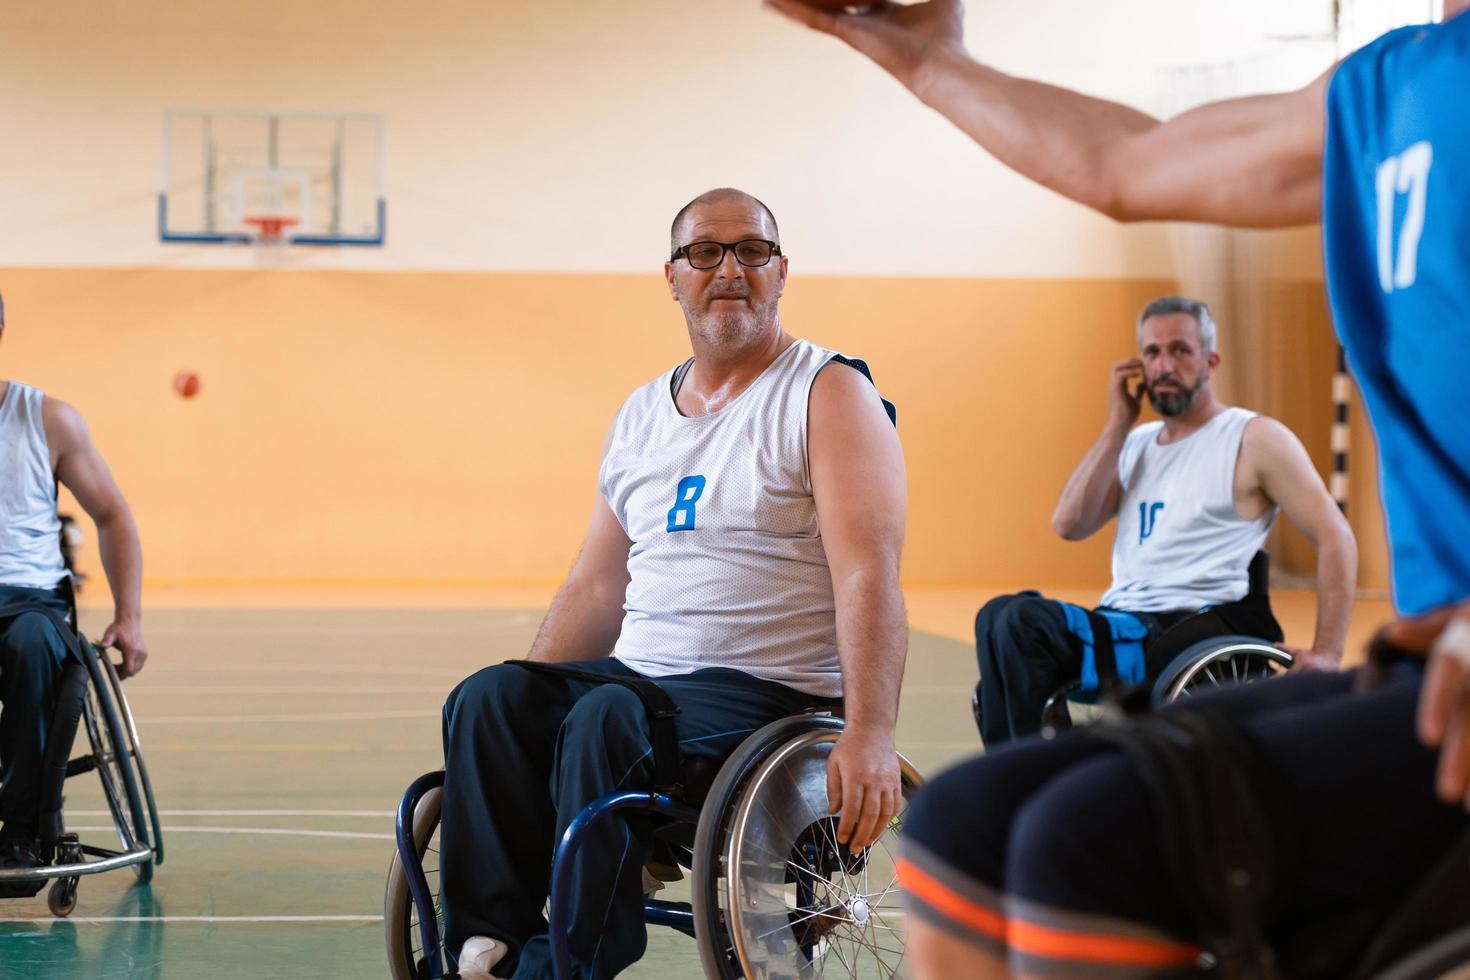 gehandicapten oorlog veteranen in rolstoelen met professioneel uitrusting Speel basketbal bij elkaar passen in de zaal.de concept van sport- met handicaps foto